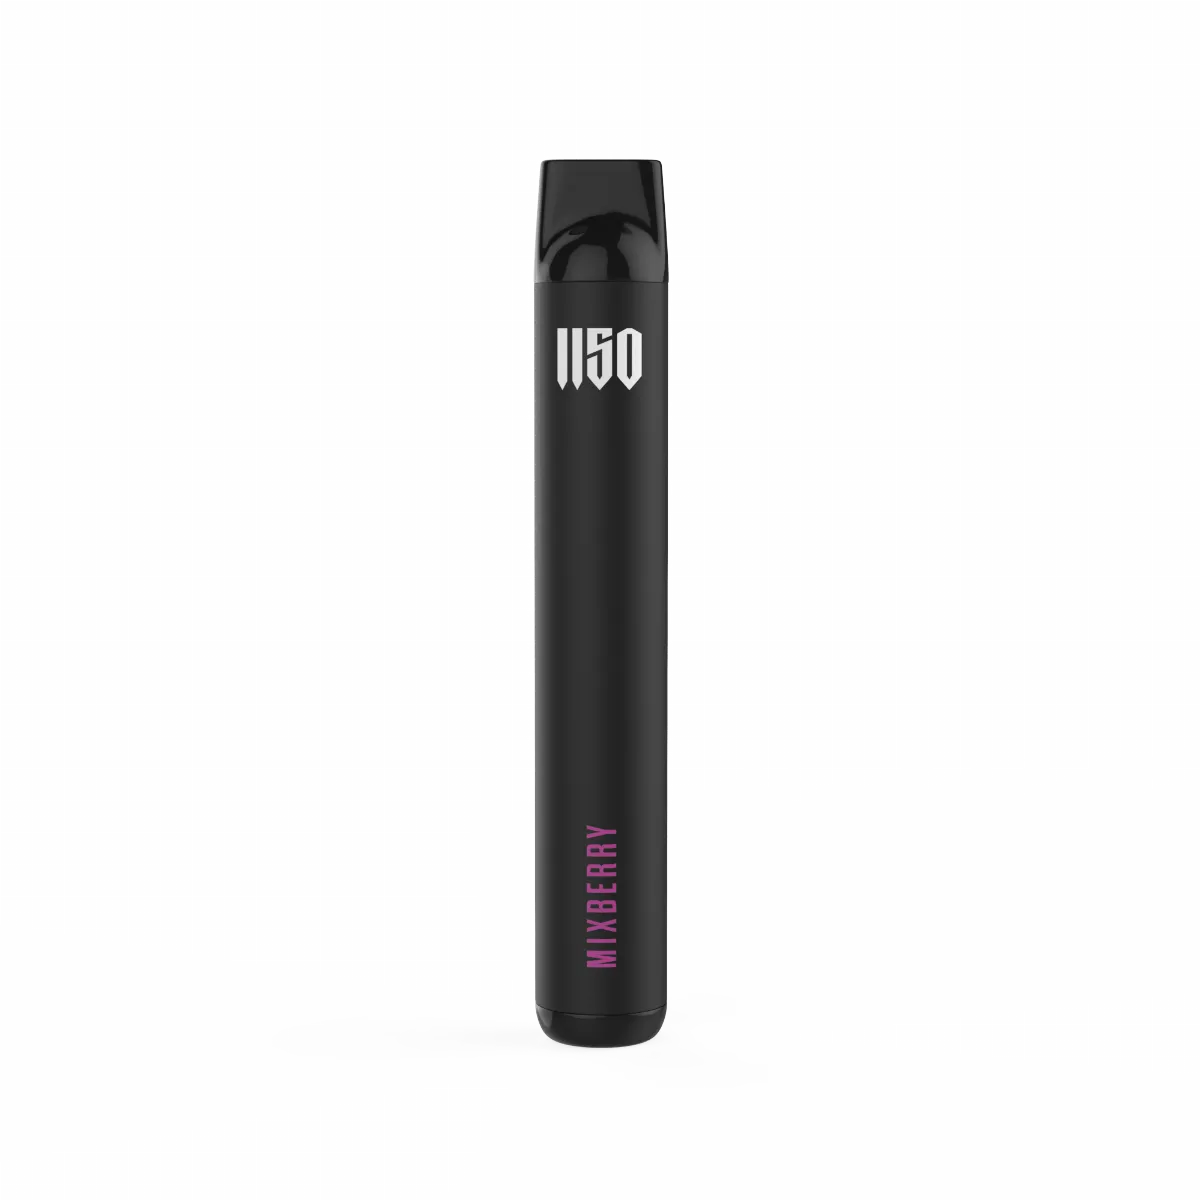 1150 Vapestick Mixberry E-Zigarette / Vape Online Kaufen